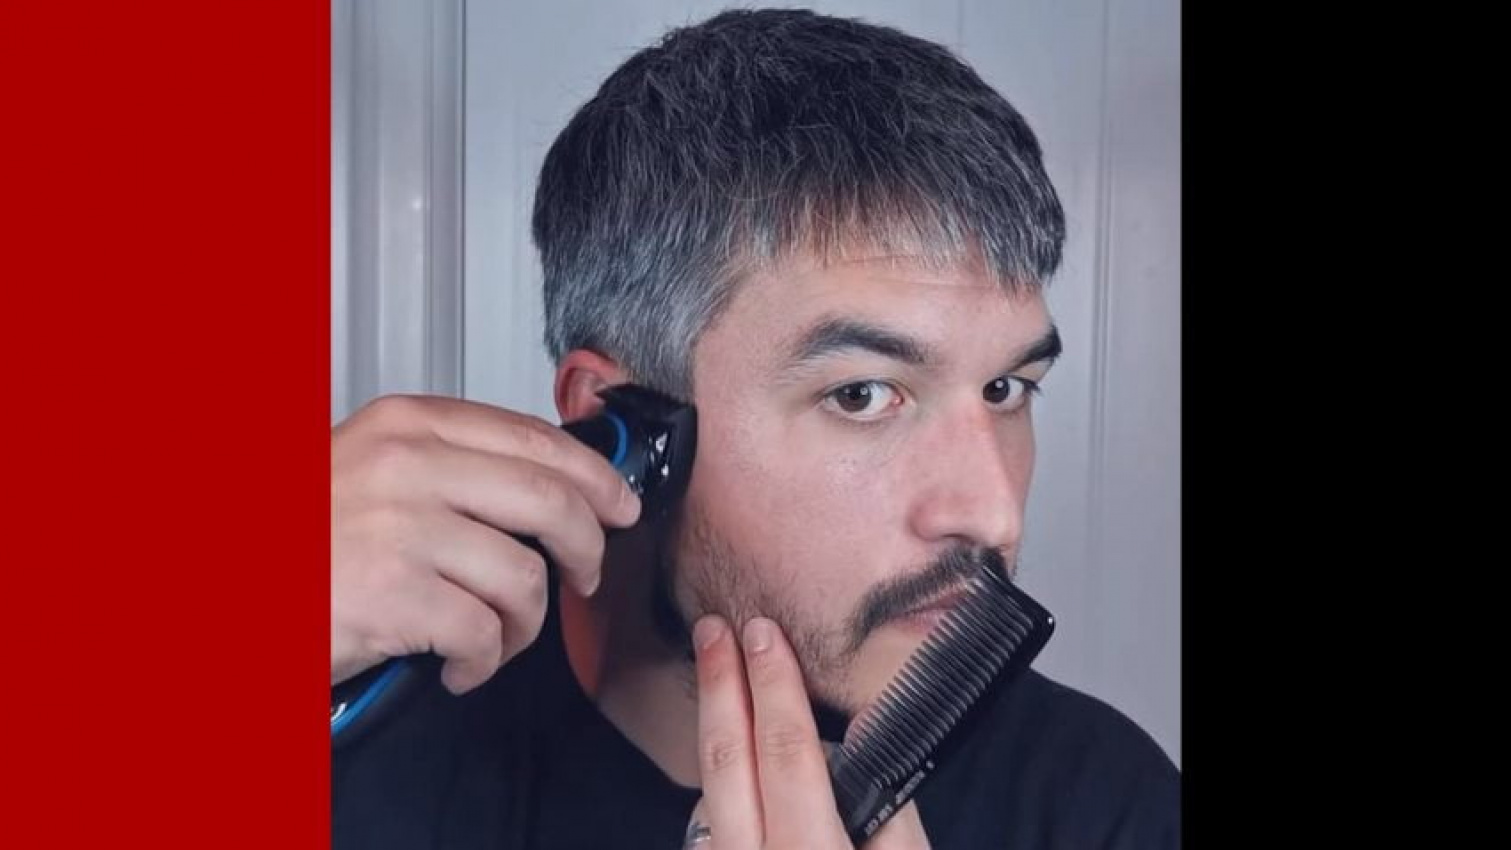 Hướng dẫn cắt tỉa tóc nam /Hớt tóc nam tại nhà mùa dịch - YouTube